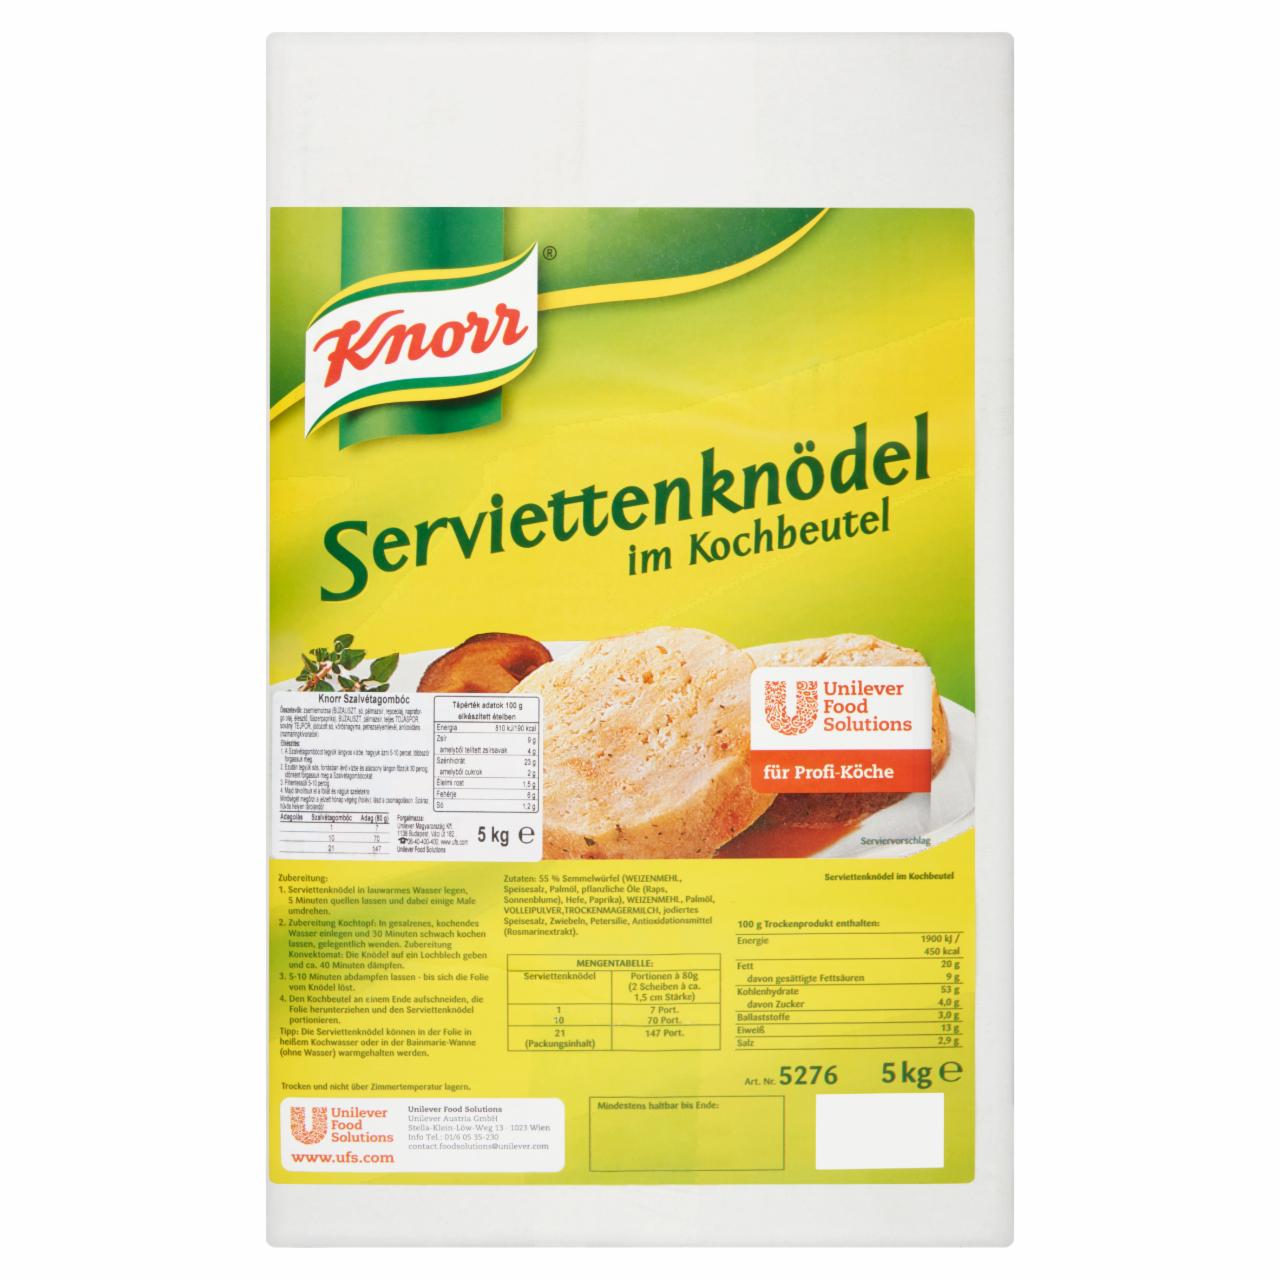 Képek - Knorr szalvétagombóc 5 kg